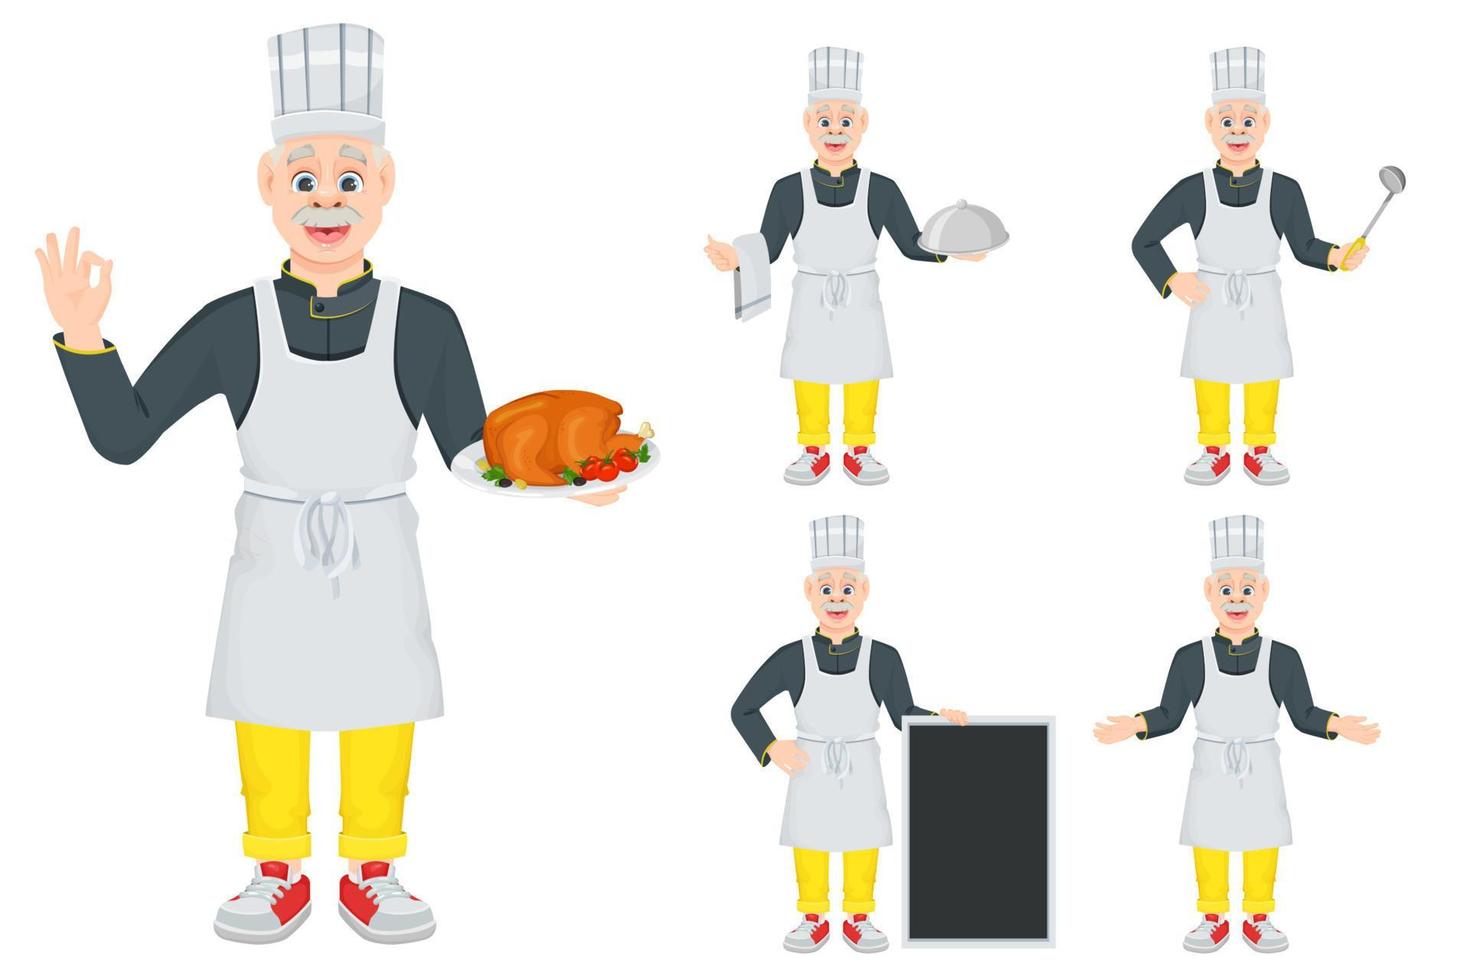 en uppsättning av tecknad rolig man kock som håller olika föremål i handen. leende gammal kock, markerad på en vit bakgrund. vektor illustration för menyer, spel eller banderoller.